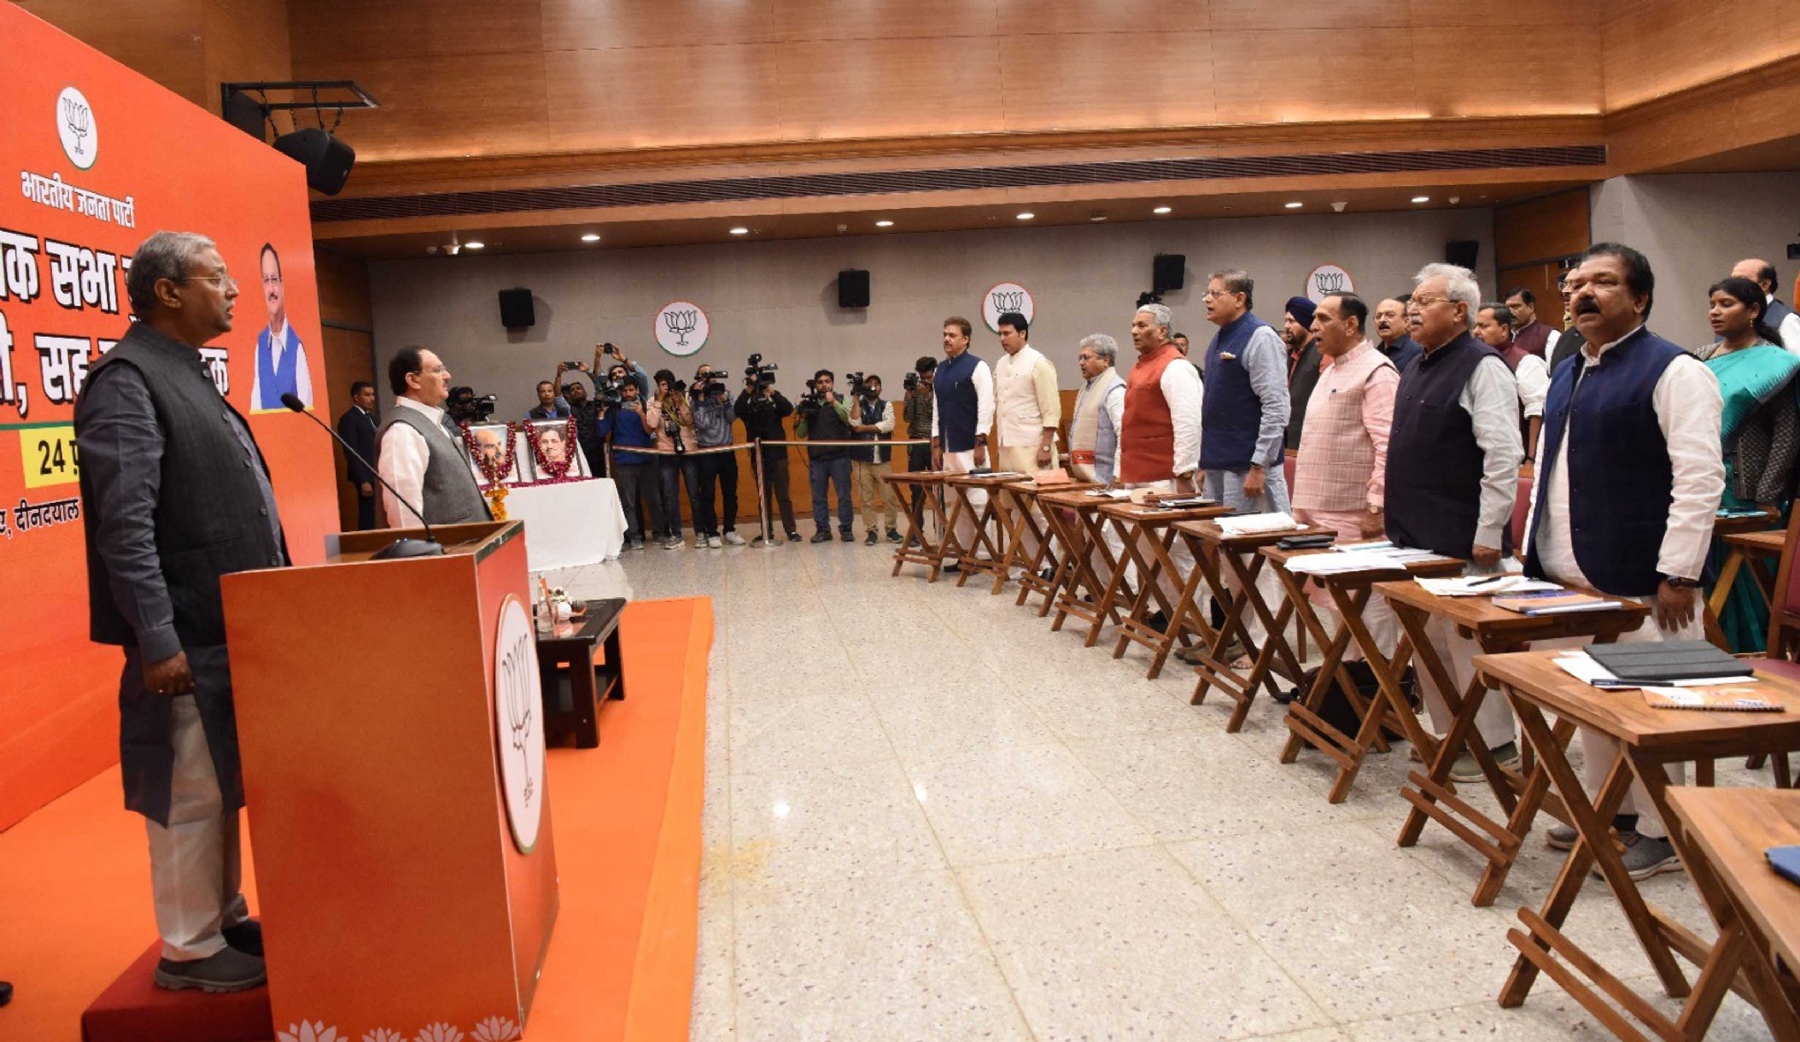 भाजपा राष्ट्रीय अध्यक्ष जेपी नड्डा ने पार्टी मुख्यालय में आगामी चुनाव के संदर्भ में 'लोकसभा चुनाव प्रभारी, सह-प्रभारी बैठक' में उपस्थित पदाधिकारियों का मार्गदर्शन किया।